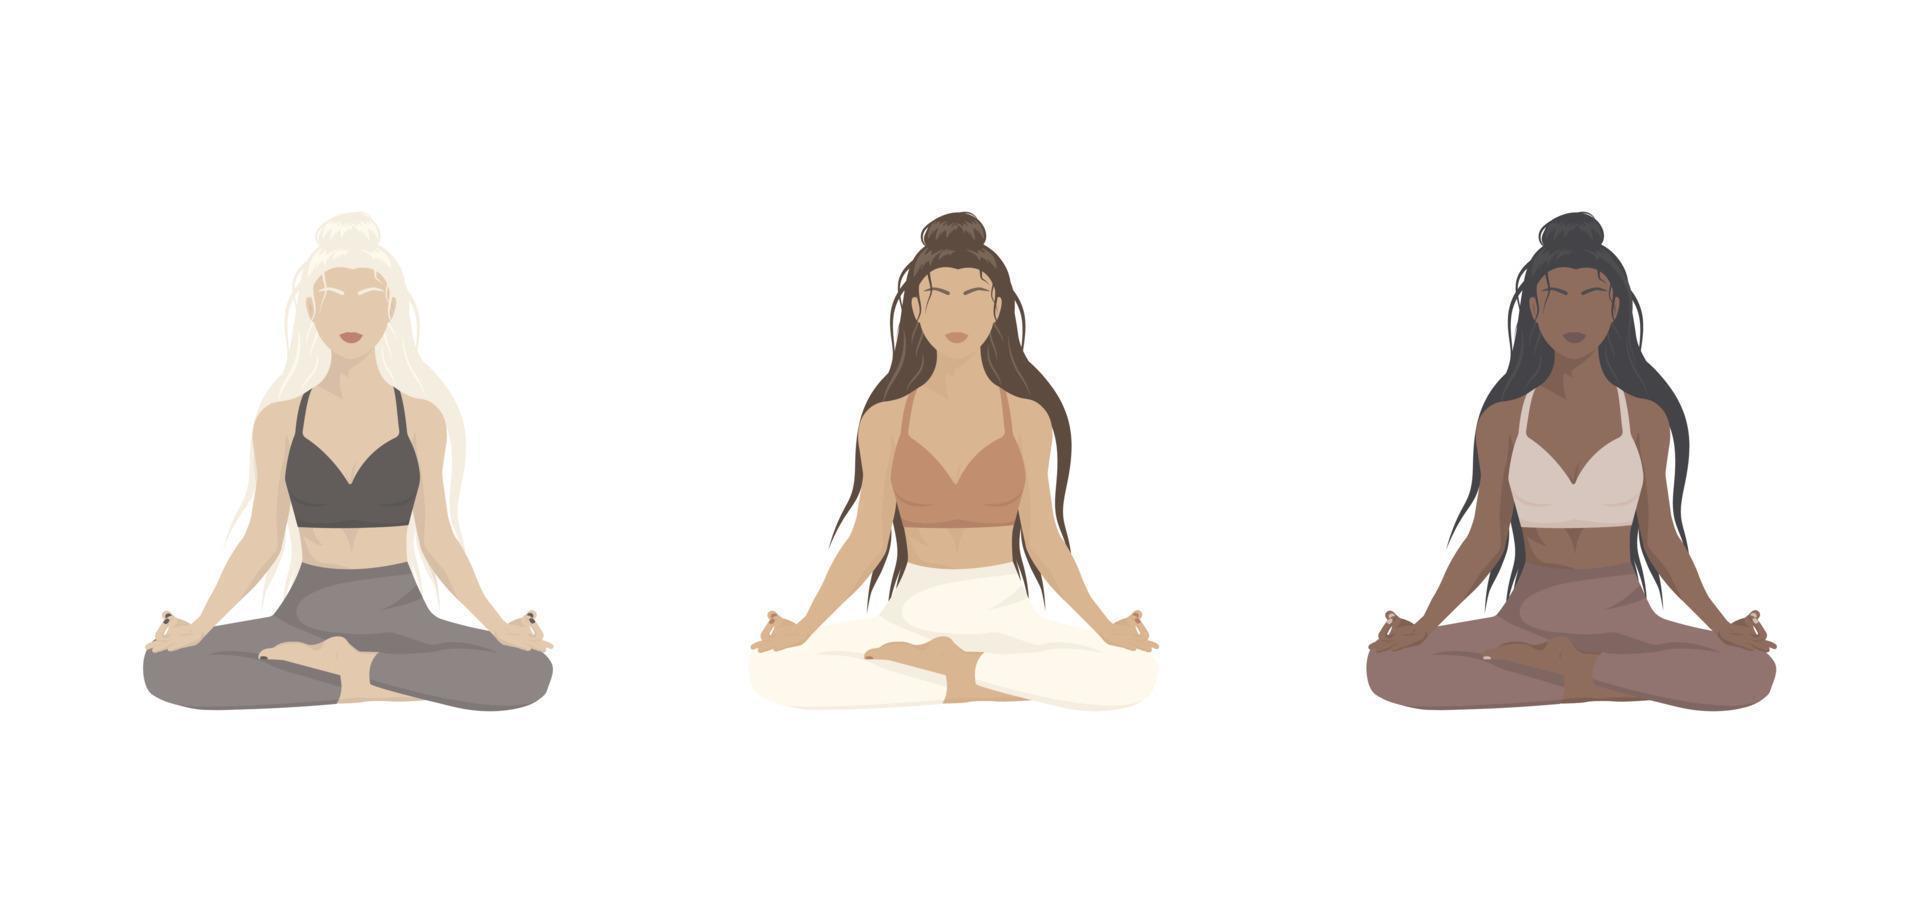 vector tekening van vrouwen in yoga pose van verschillende nationaliteiten en huidskleuren.